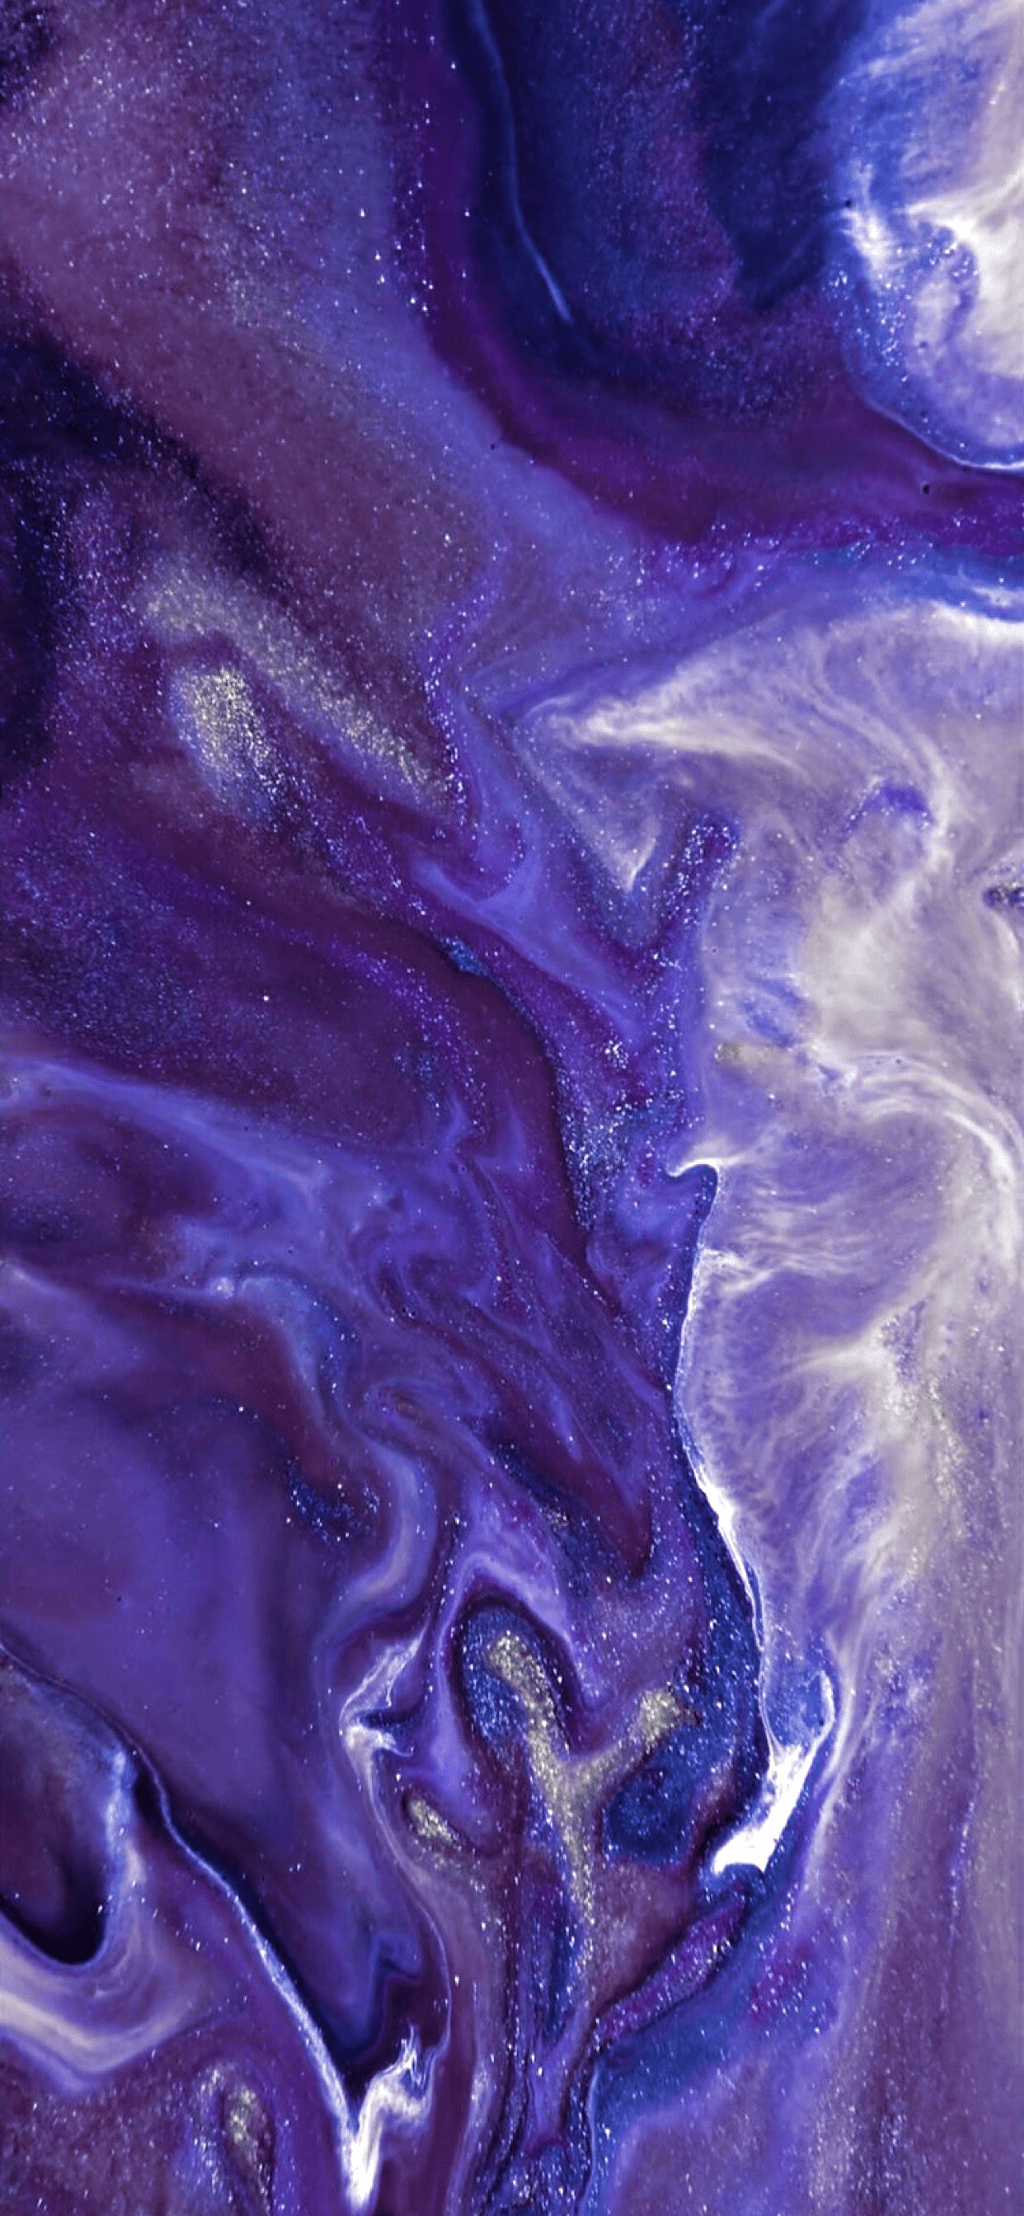 Dark Purple Marble Wallpapers - Top Free Dark Purple Marble Backgrounds ...